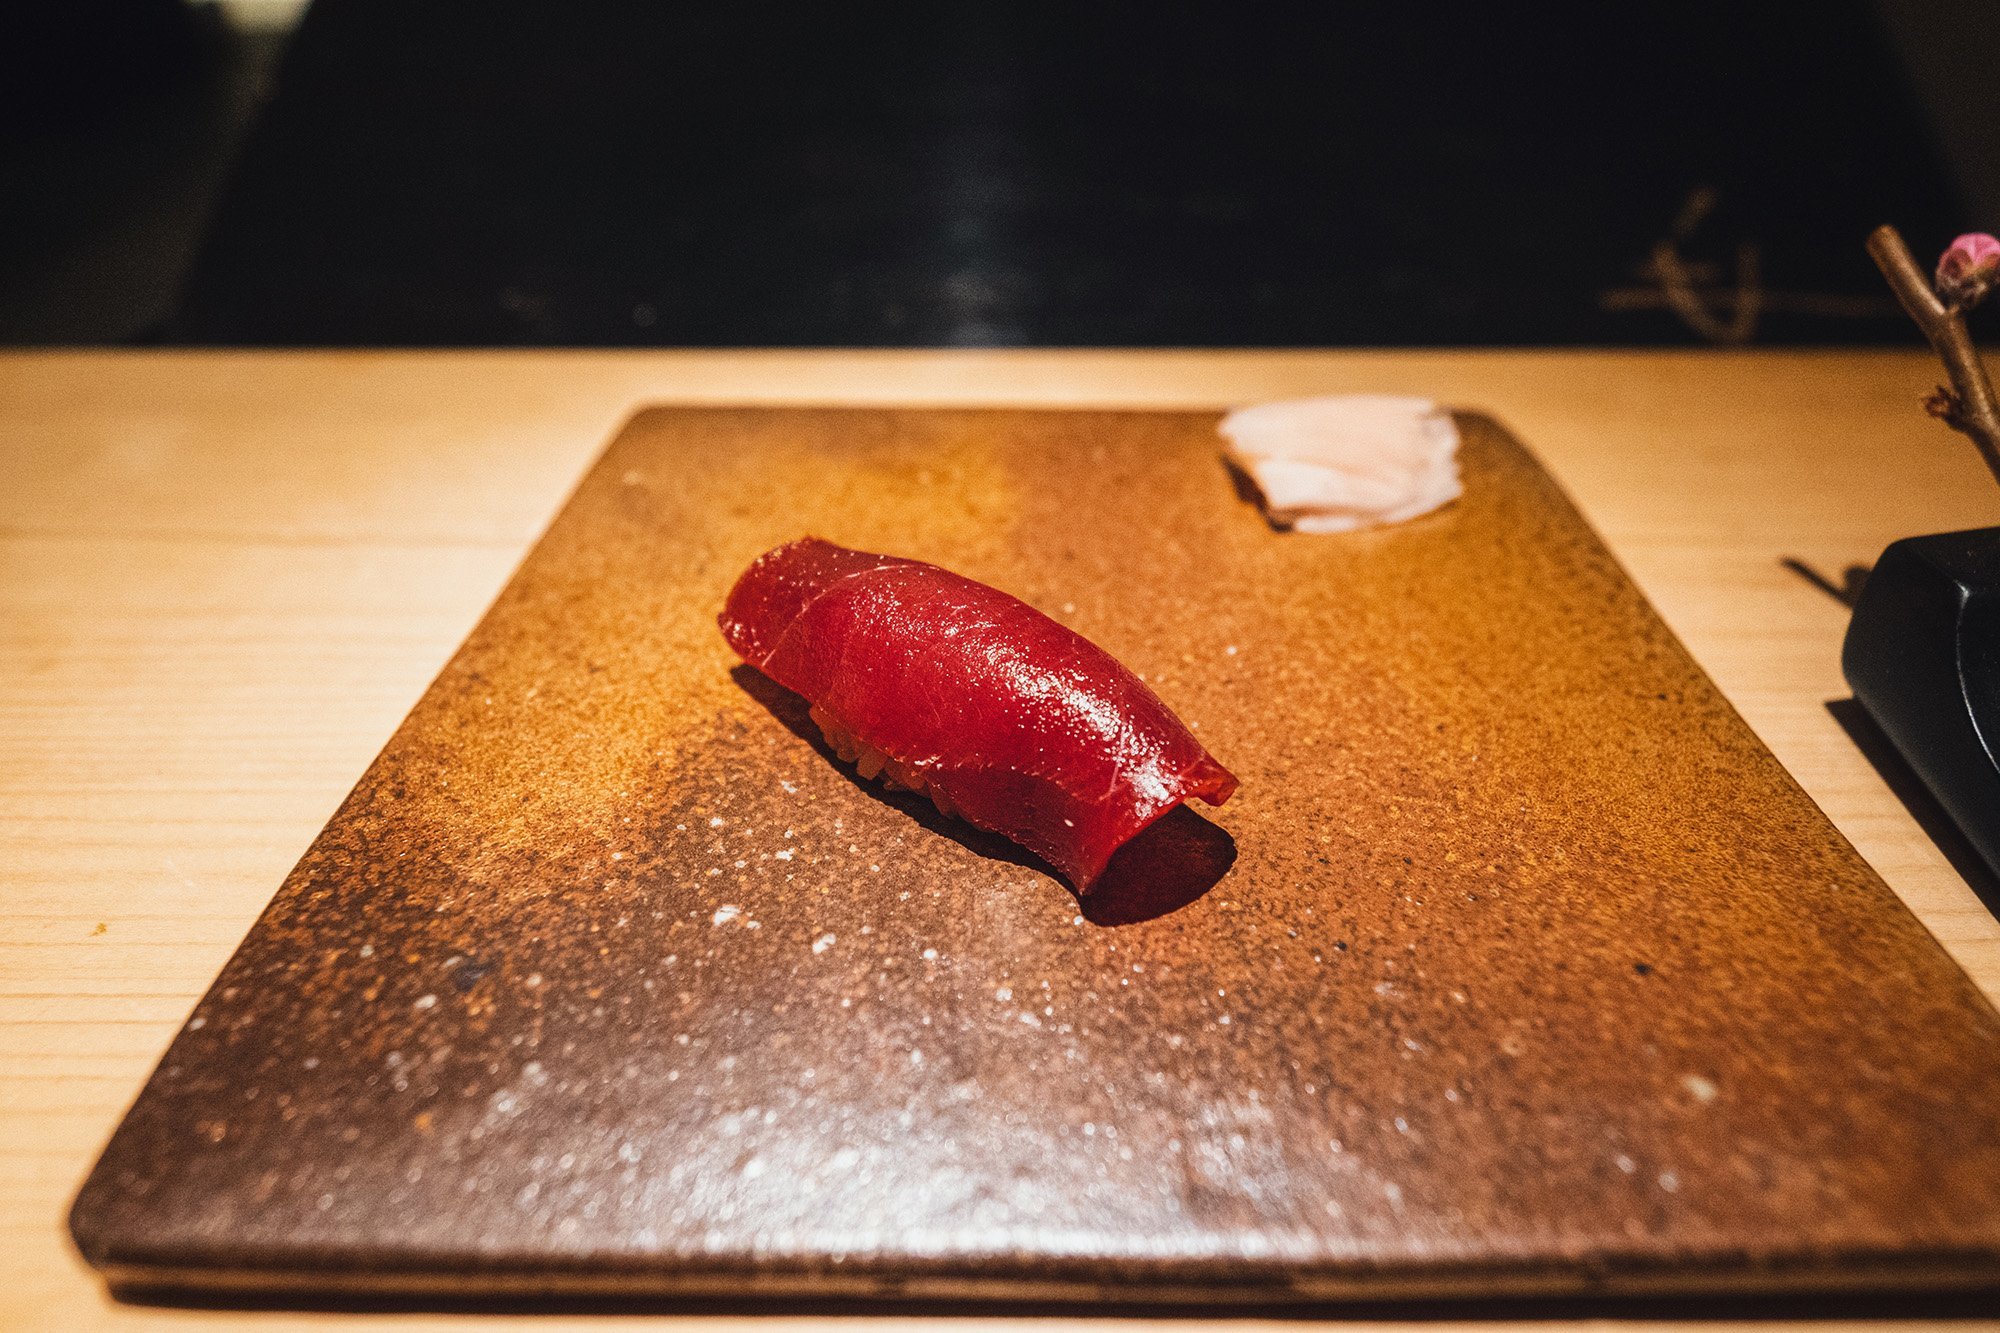 Akami maguro / tuna